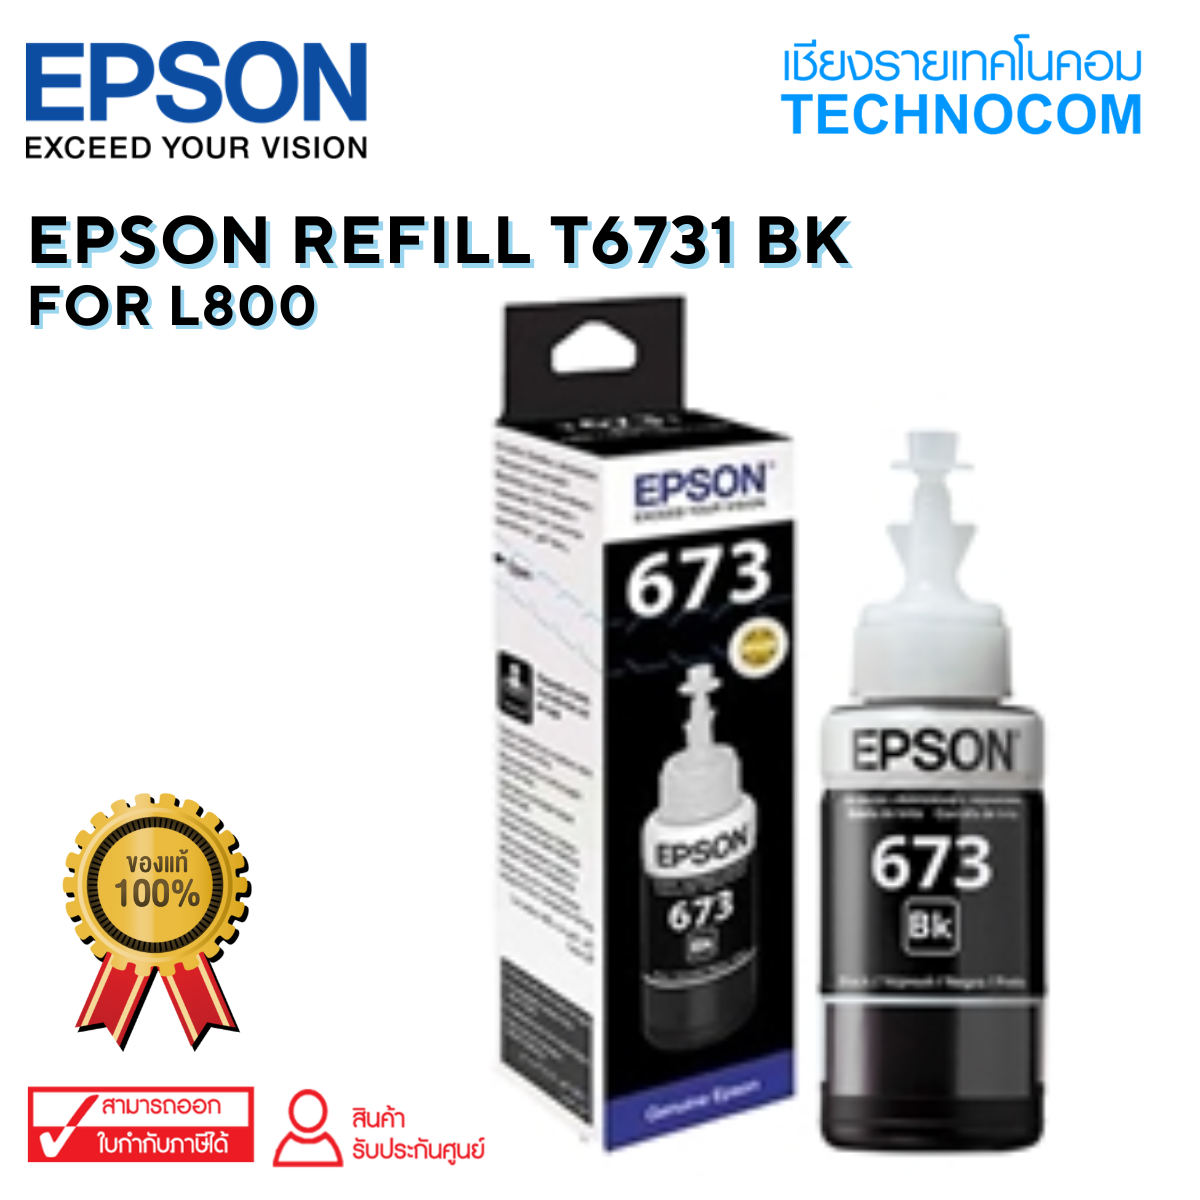 EPSON REFILL T6731 BK For L800